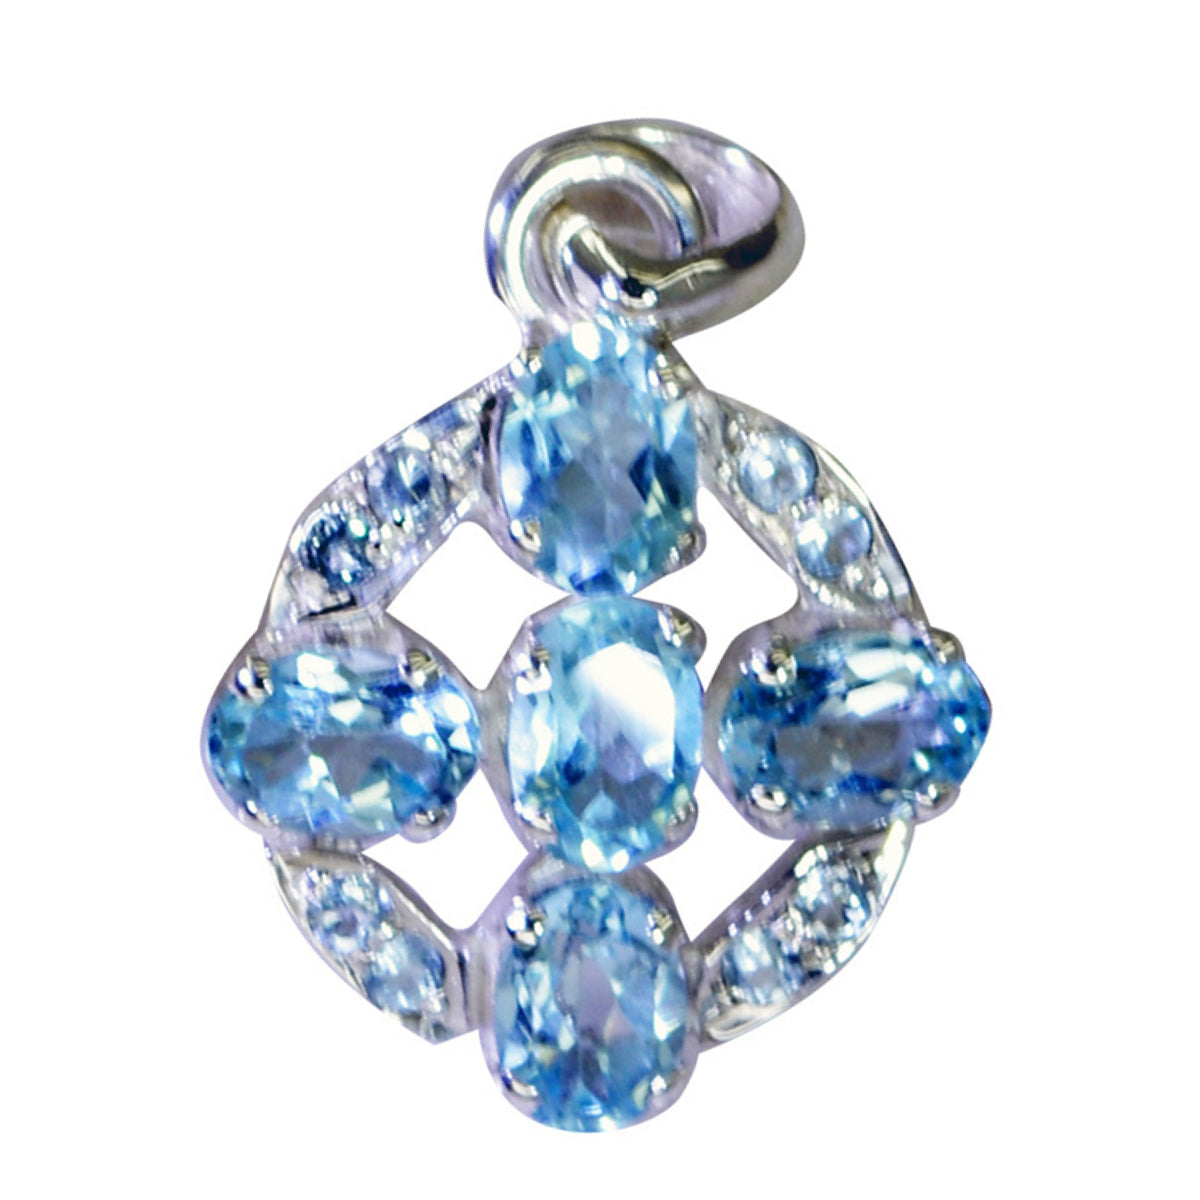 Riyo Prepossessing Gems Oval Faceted Blue Blue Topaz Silver Pendant Gift For Sister